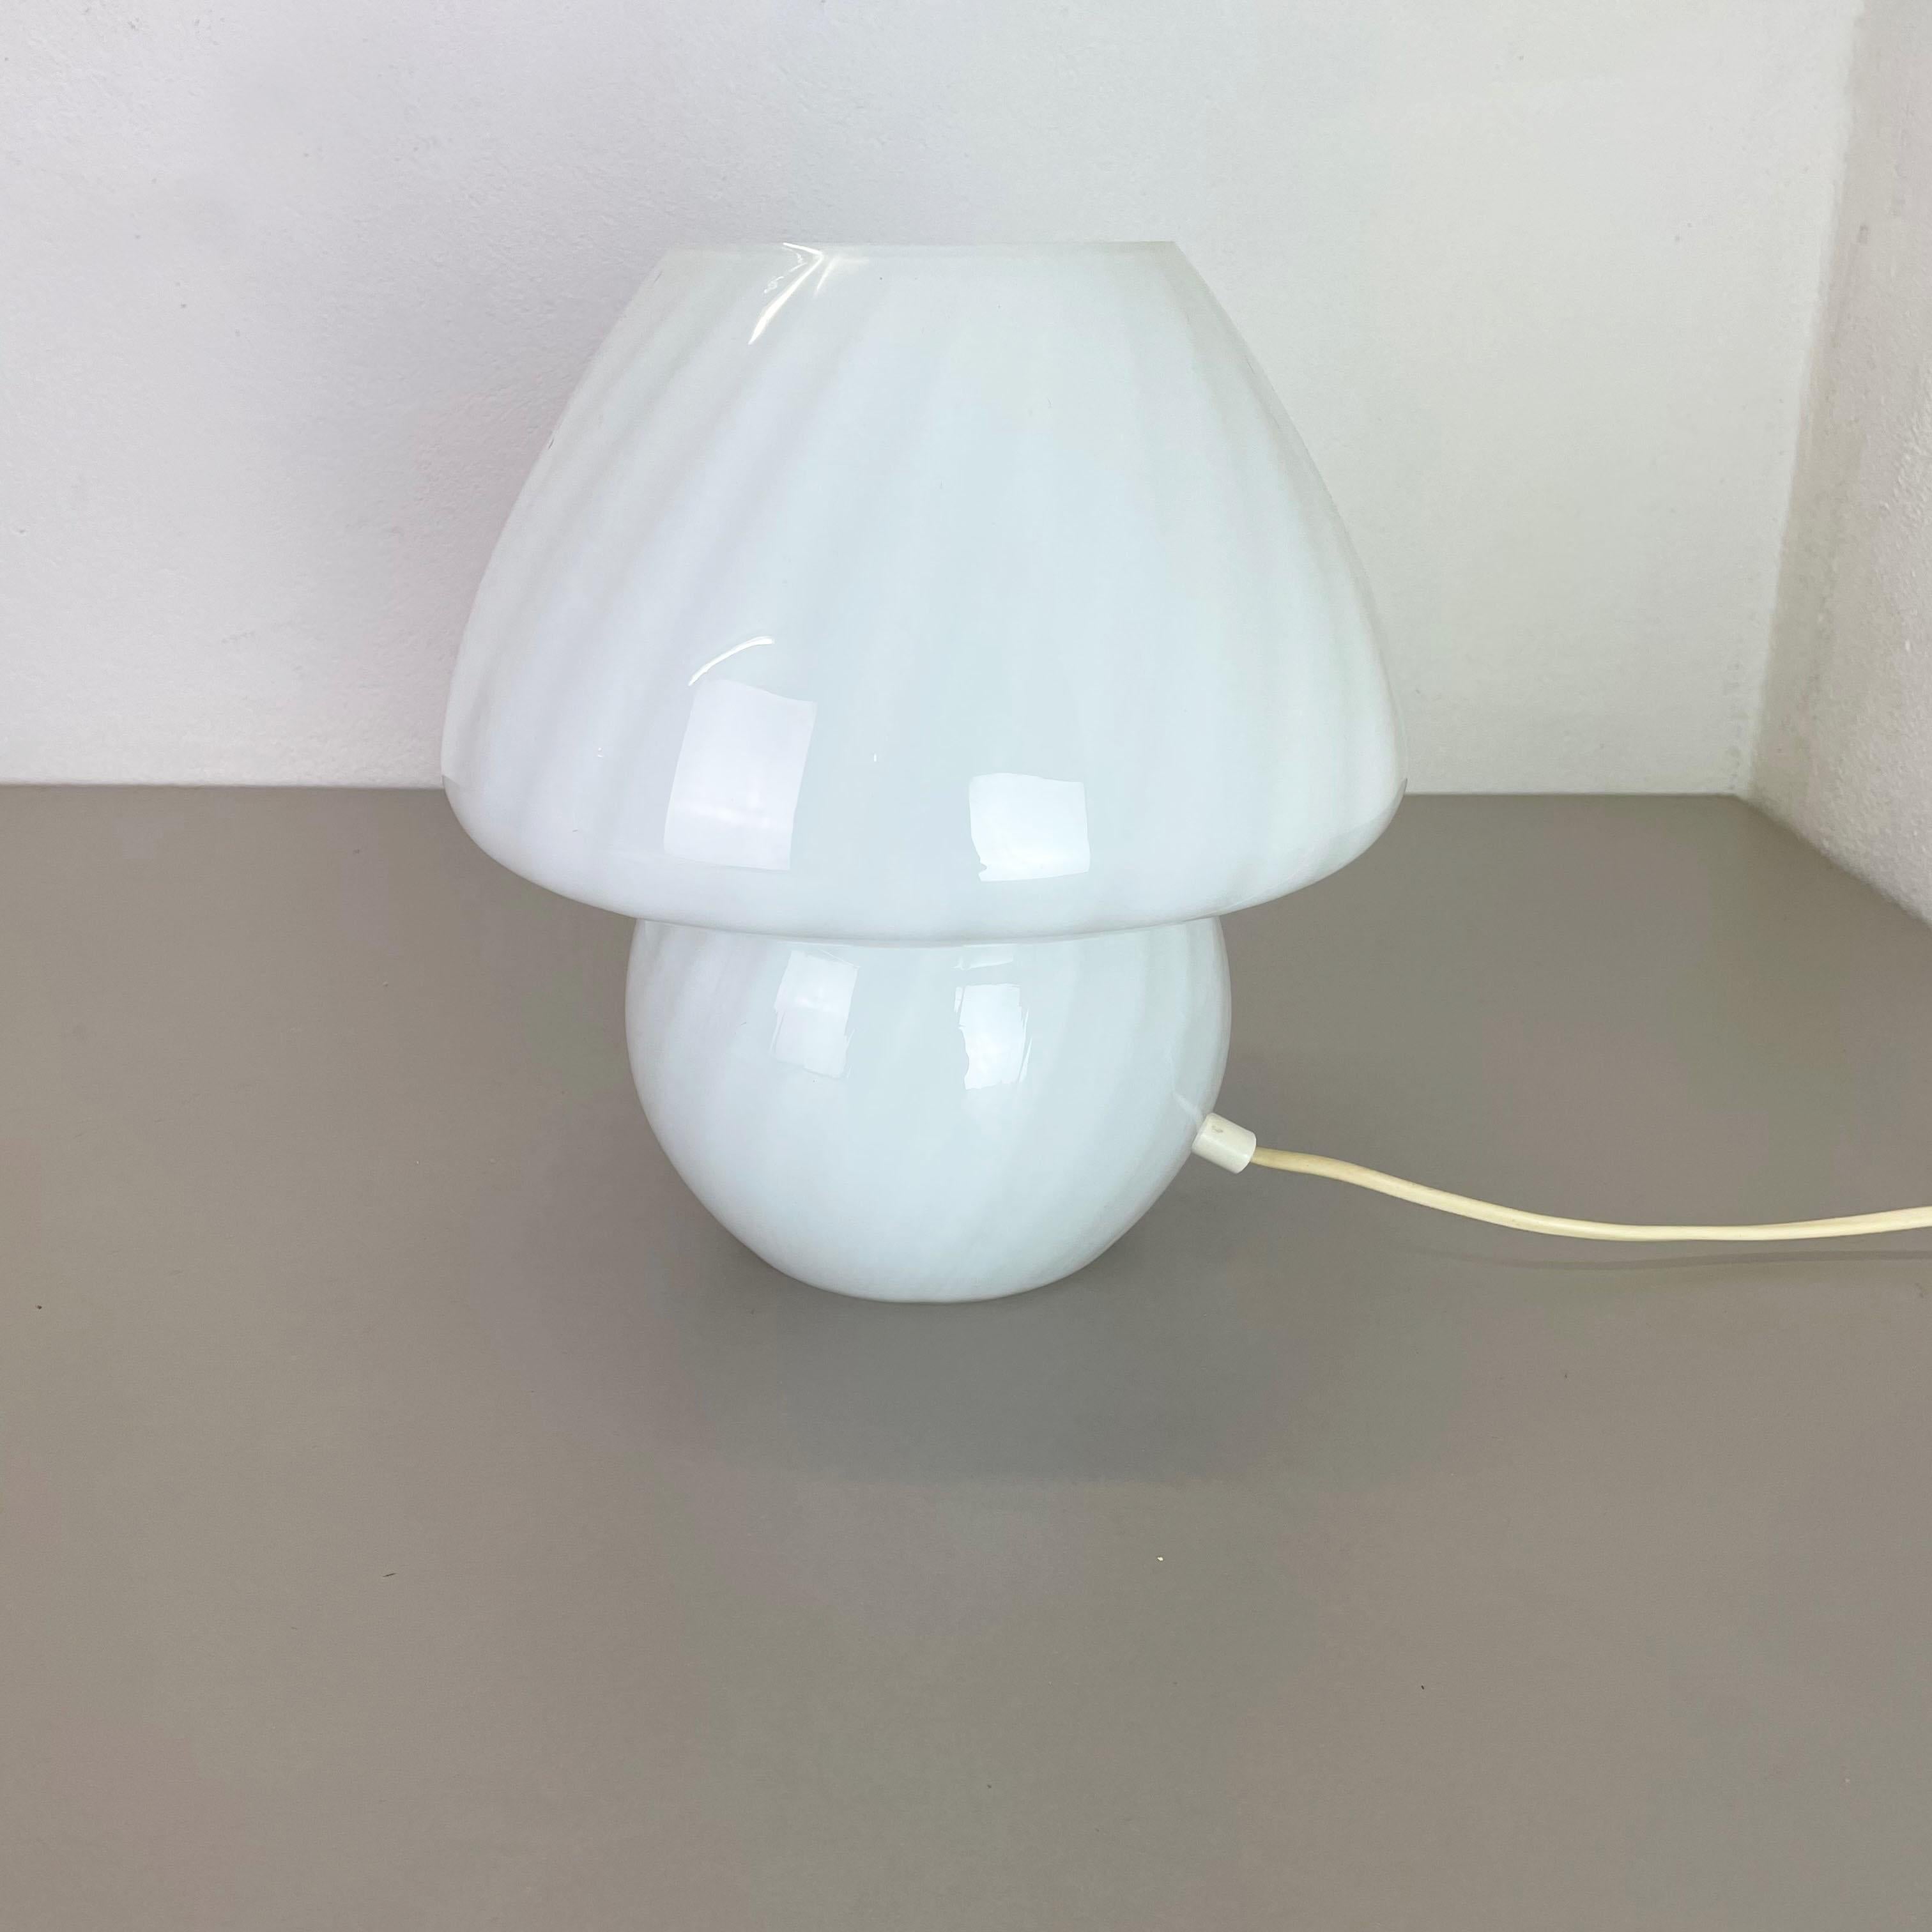 Article :

Lampe de table 